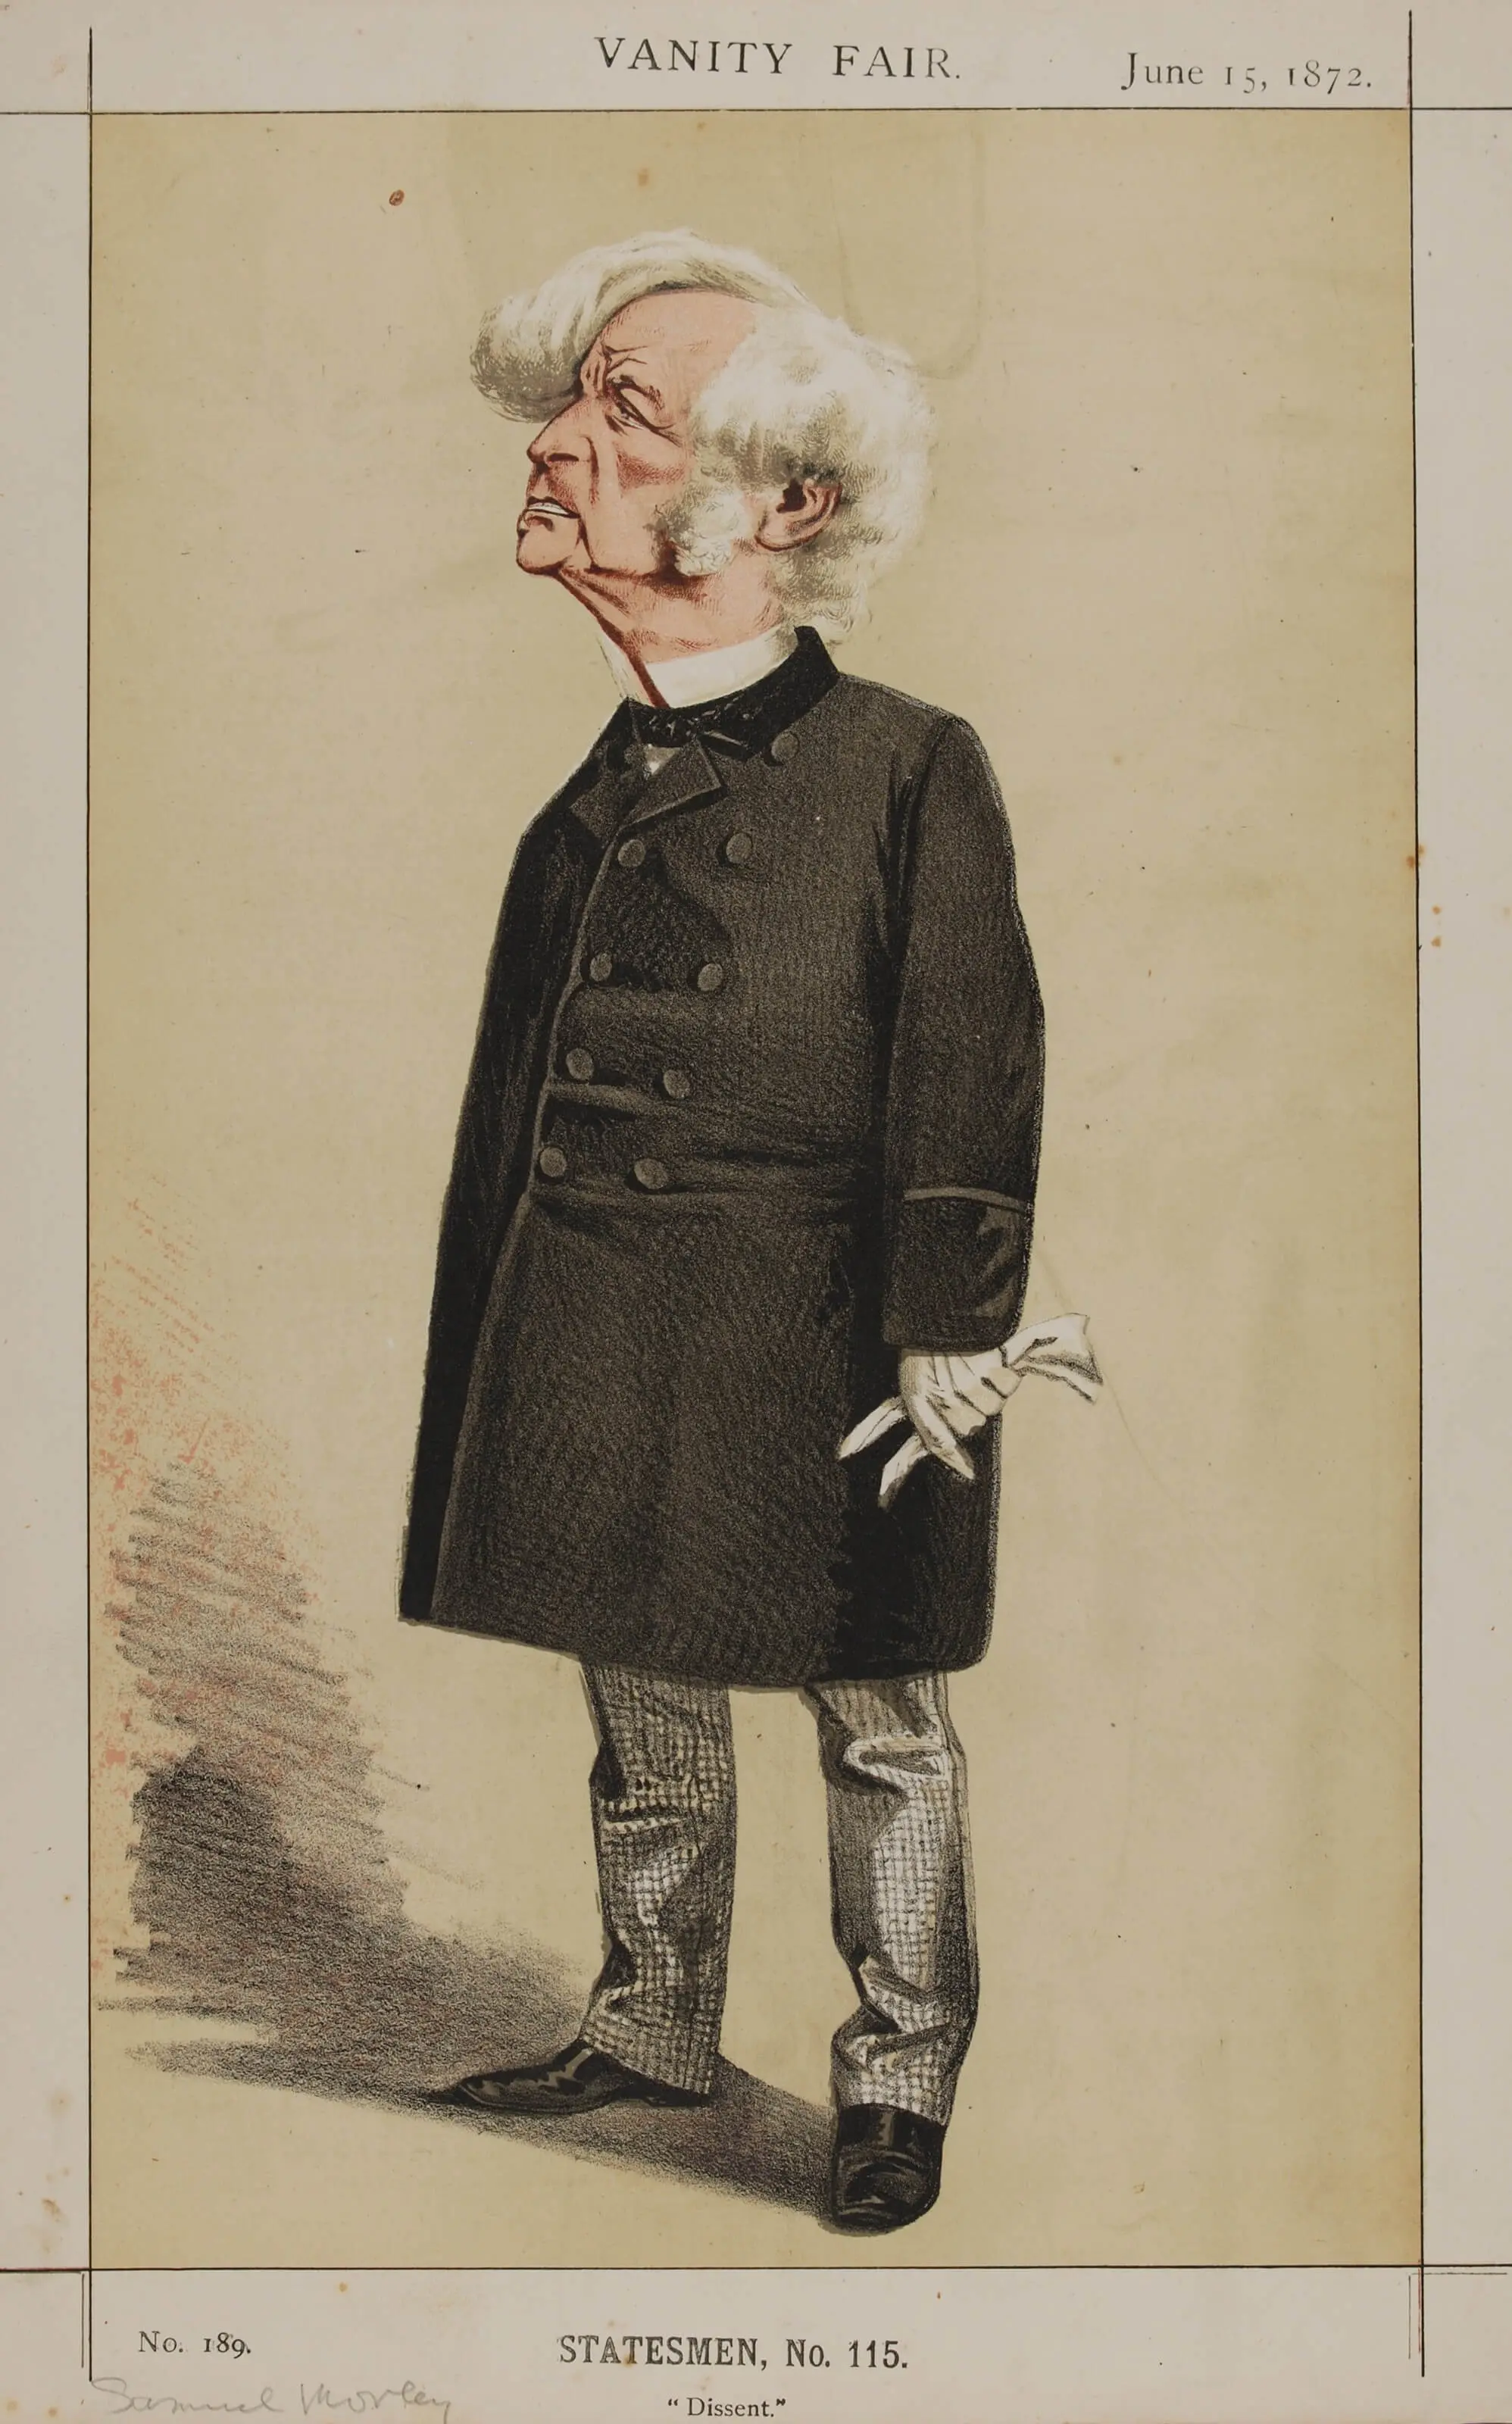 Samuel Morley, Vanity Fair, 1872